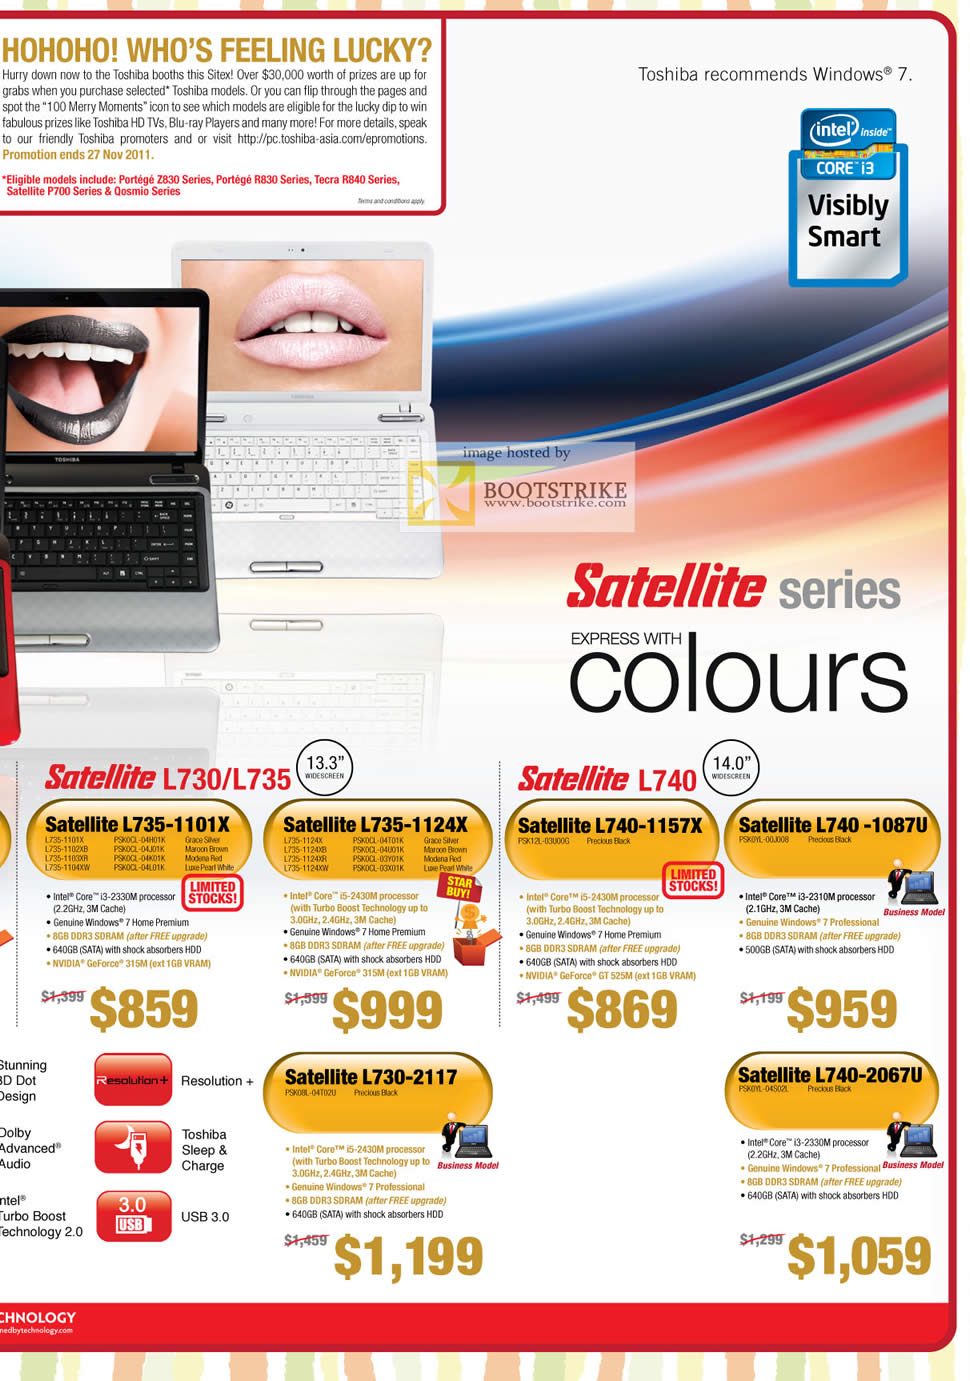 SITEX 2011 price list image brochure of Toshiba Notebooks Satellite L735-1101X PSK0CL 04H01K 04J01K 04K01K 04L01K, 1124X 04T01K 04U01K 03Y01K 03X01K, L730-2117 PSK08L 04T02U